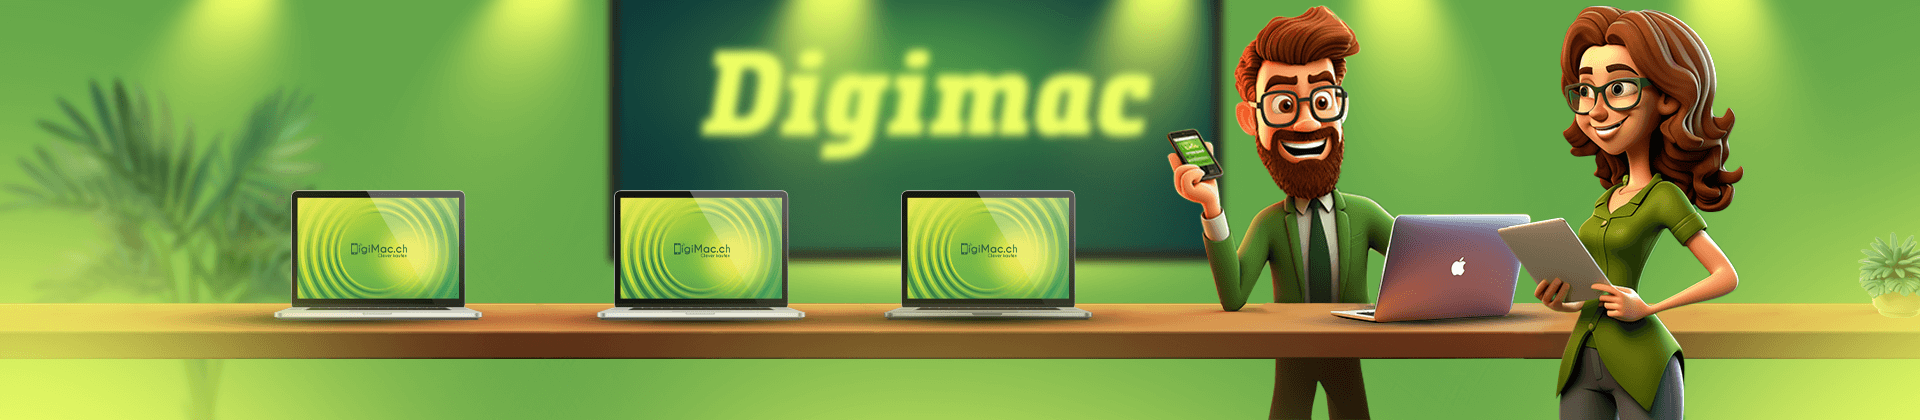 DigiMac